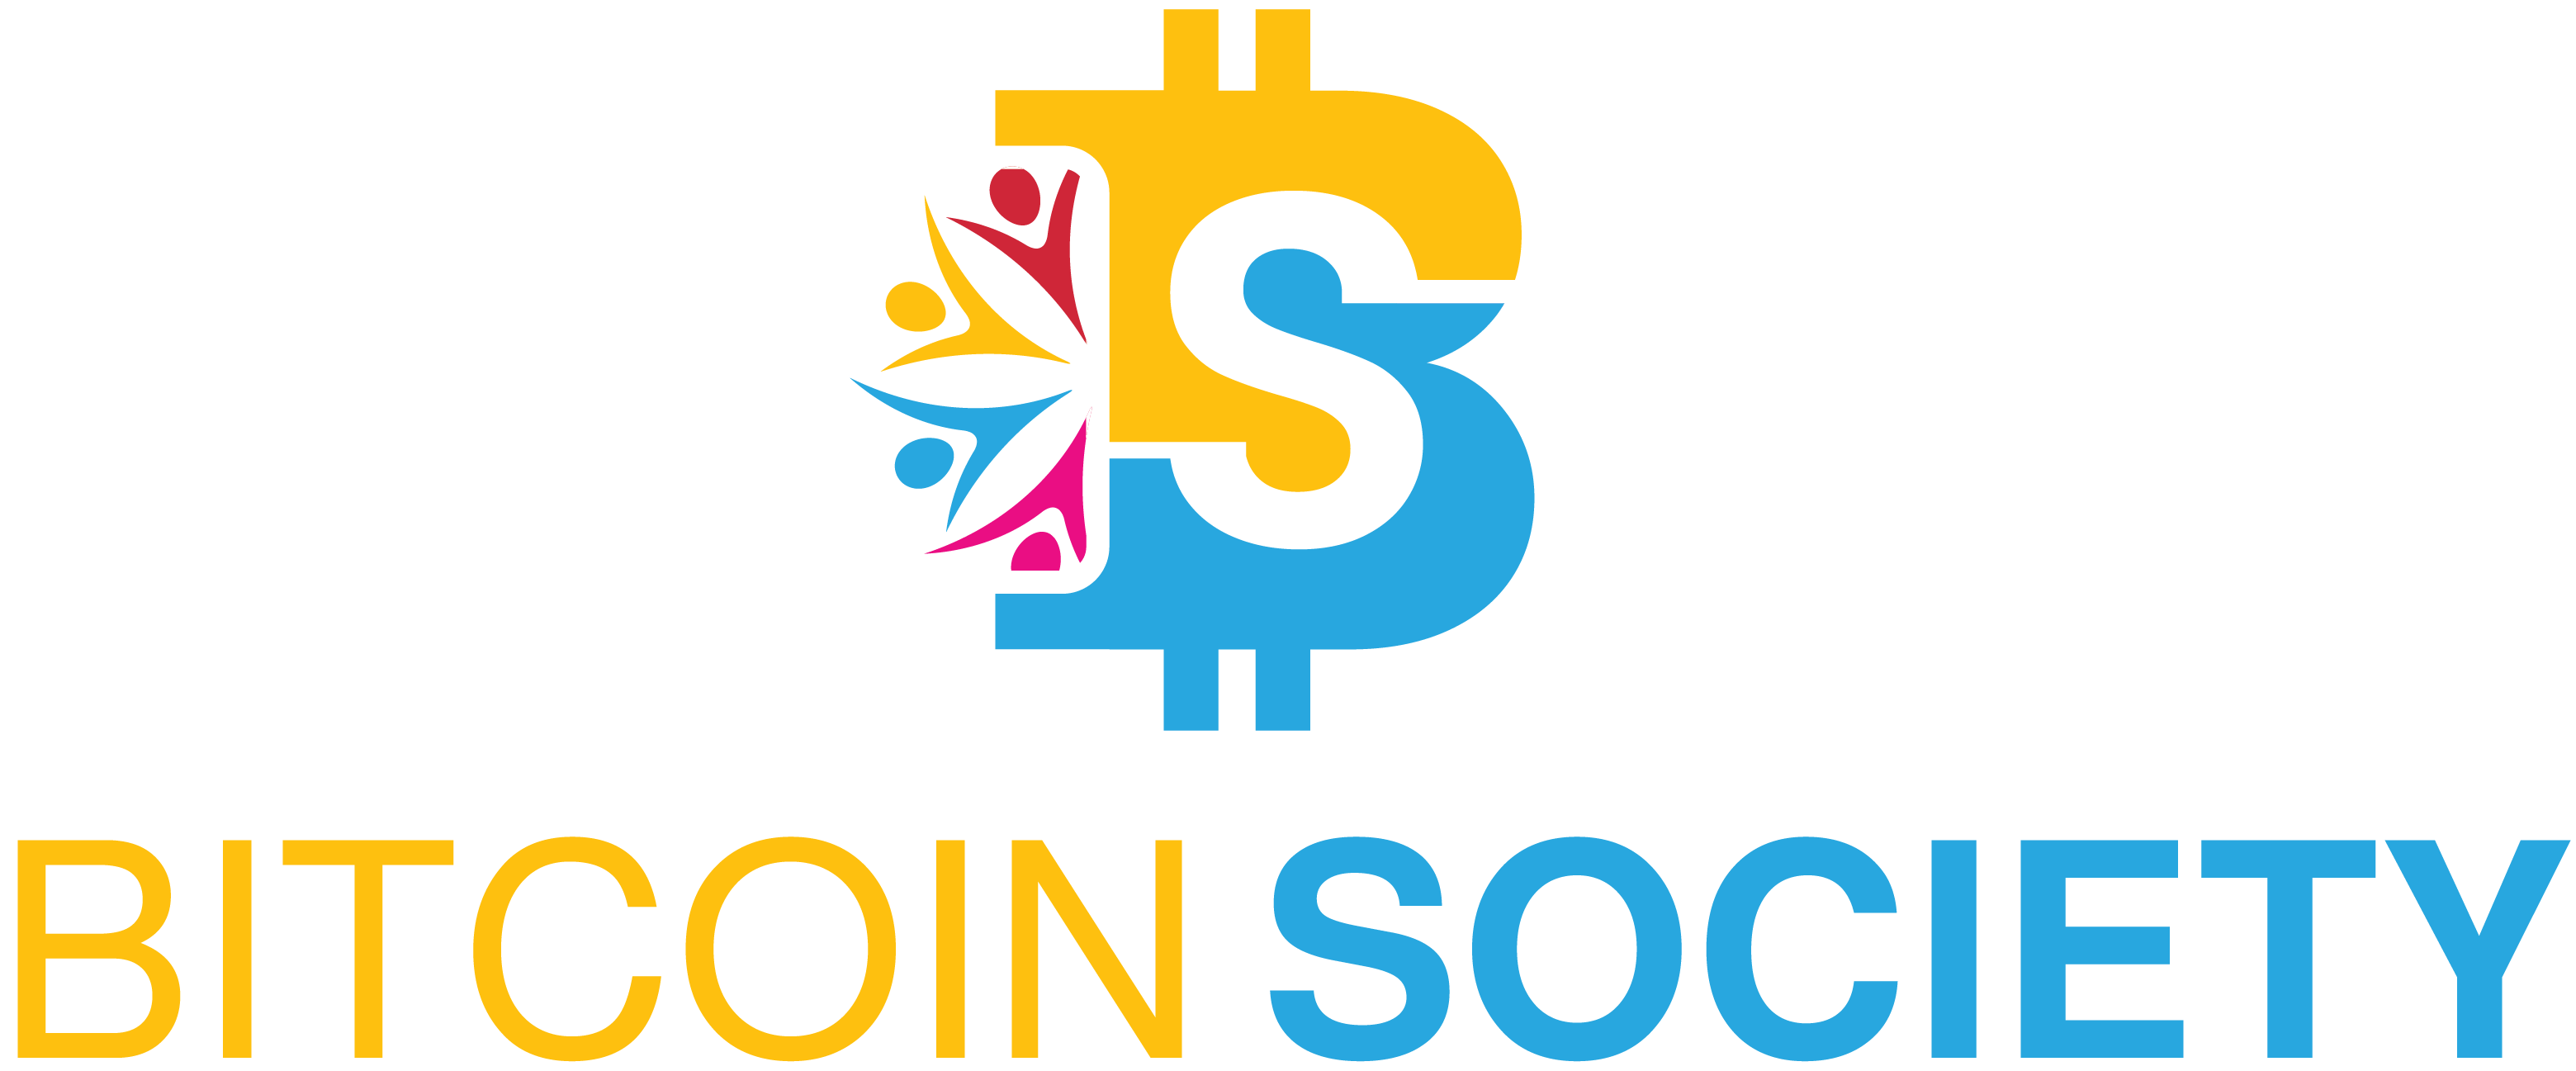 Bitcoin Society - Bitcoin Society チーム